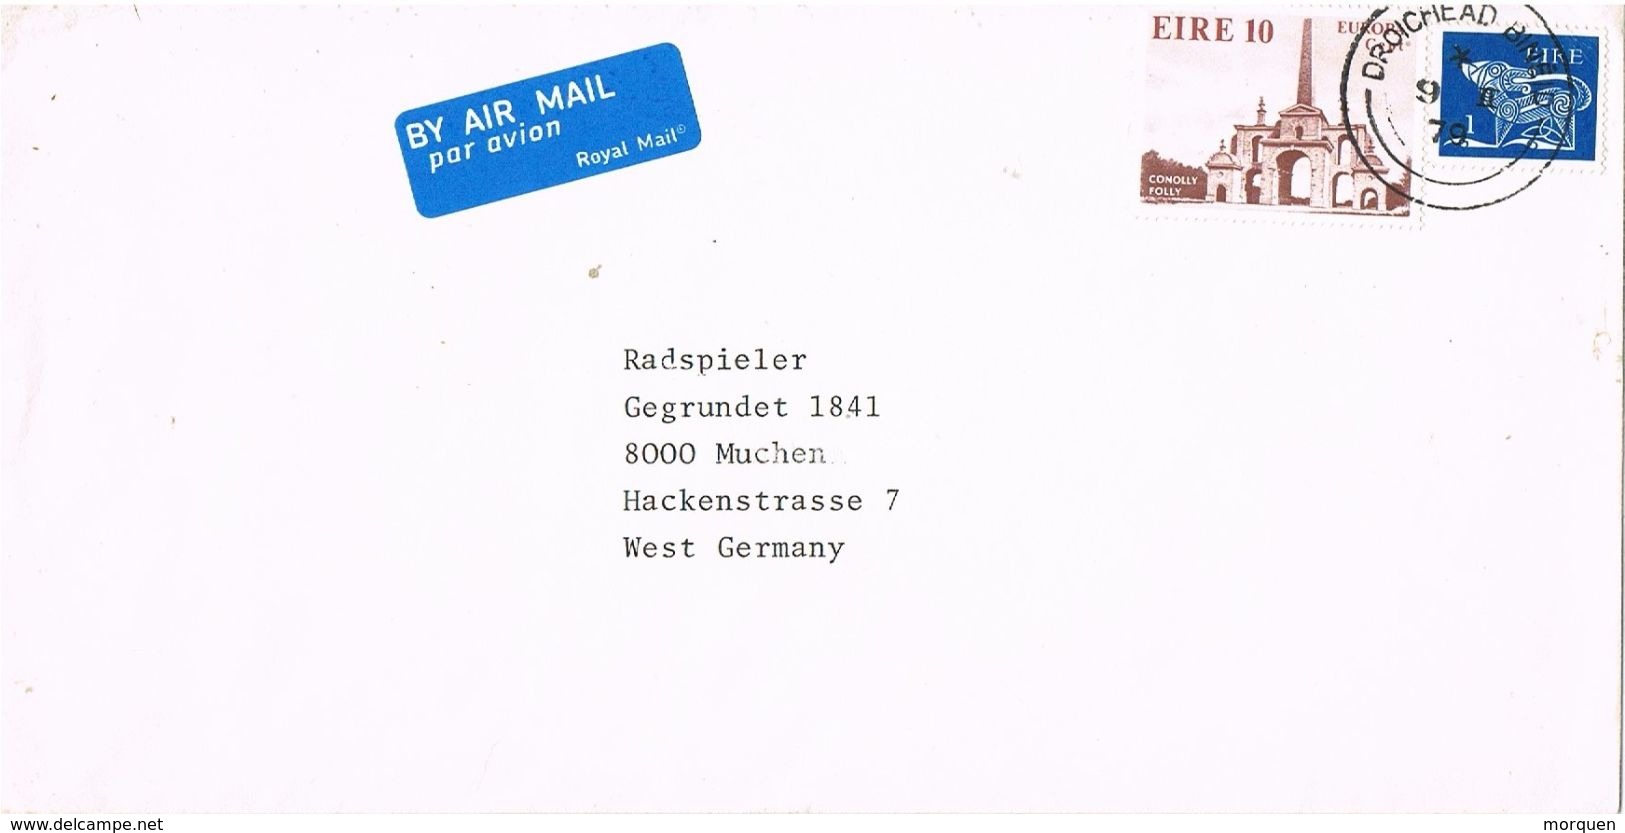 26987. Carta Aerea DROICHEAD BINEID (Irlanda) Eire 1979 - Storia Postale